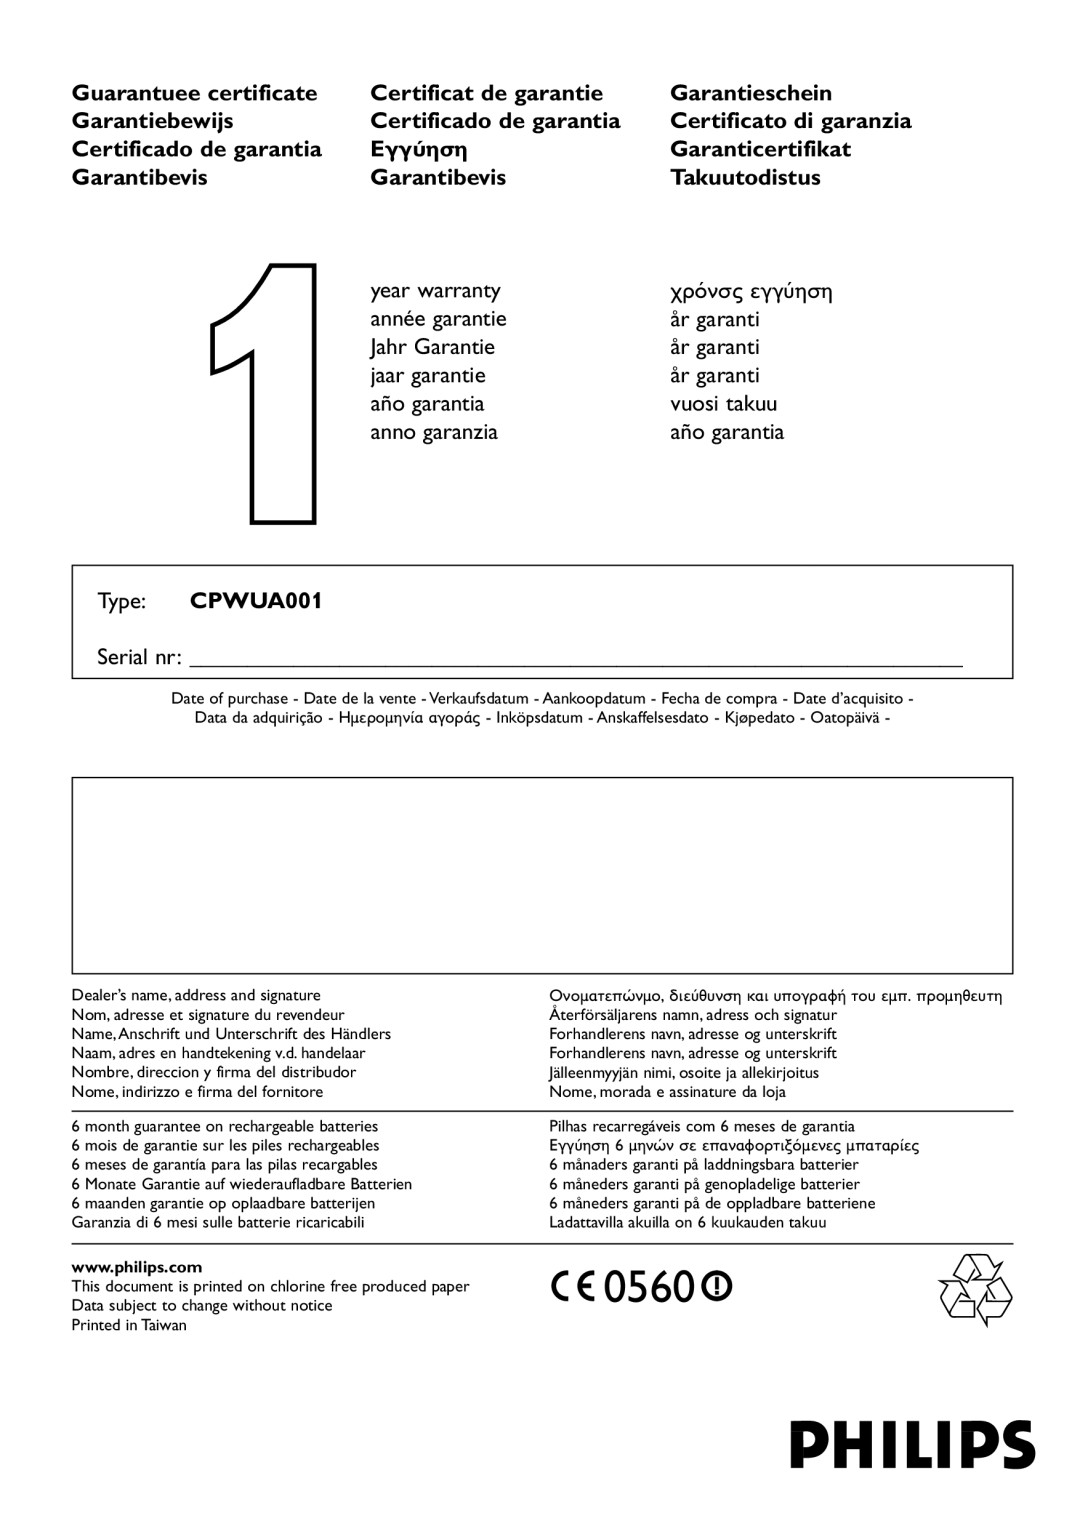 Philips CPWUA001 manual 0560, Serial nr, Inköpsdatum - Anskaffelsesdato - Kjøpedato - Oatopäivä 